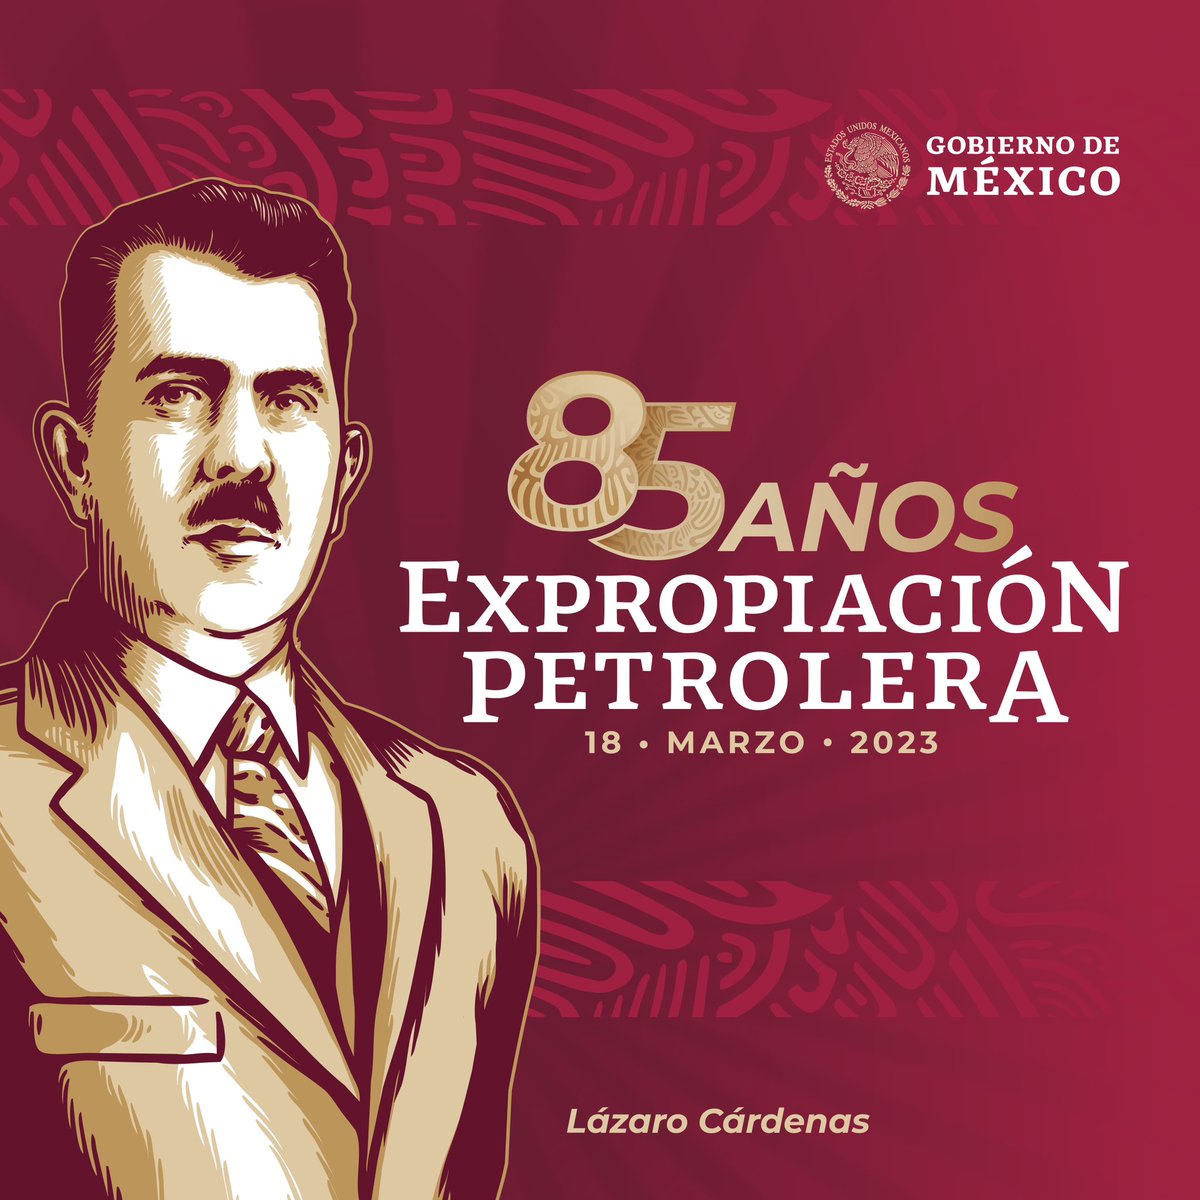 #PorElRescateDeLaSoberanía
Hoy conmemoramos 85 años de la Expropiación Petrolera.